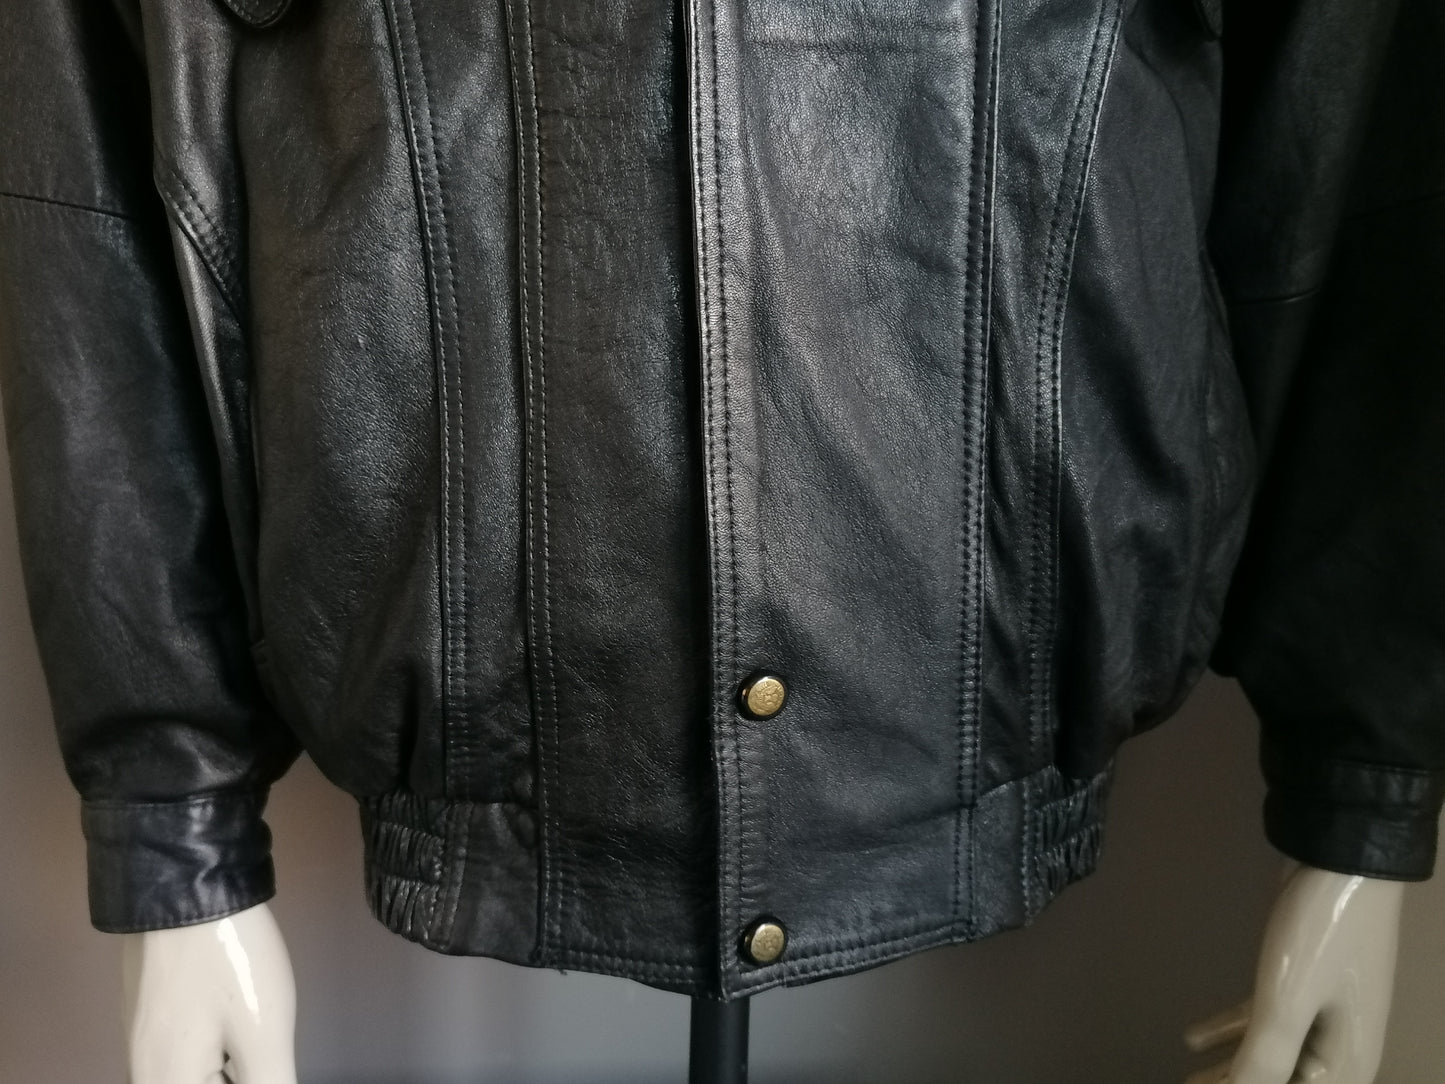 Veste en cuir vintage des années 80-90 avec double fermeture. Couleur noire marron. Taille l / xl.